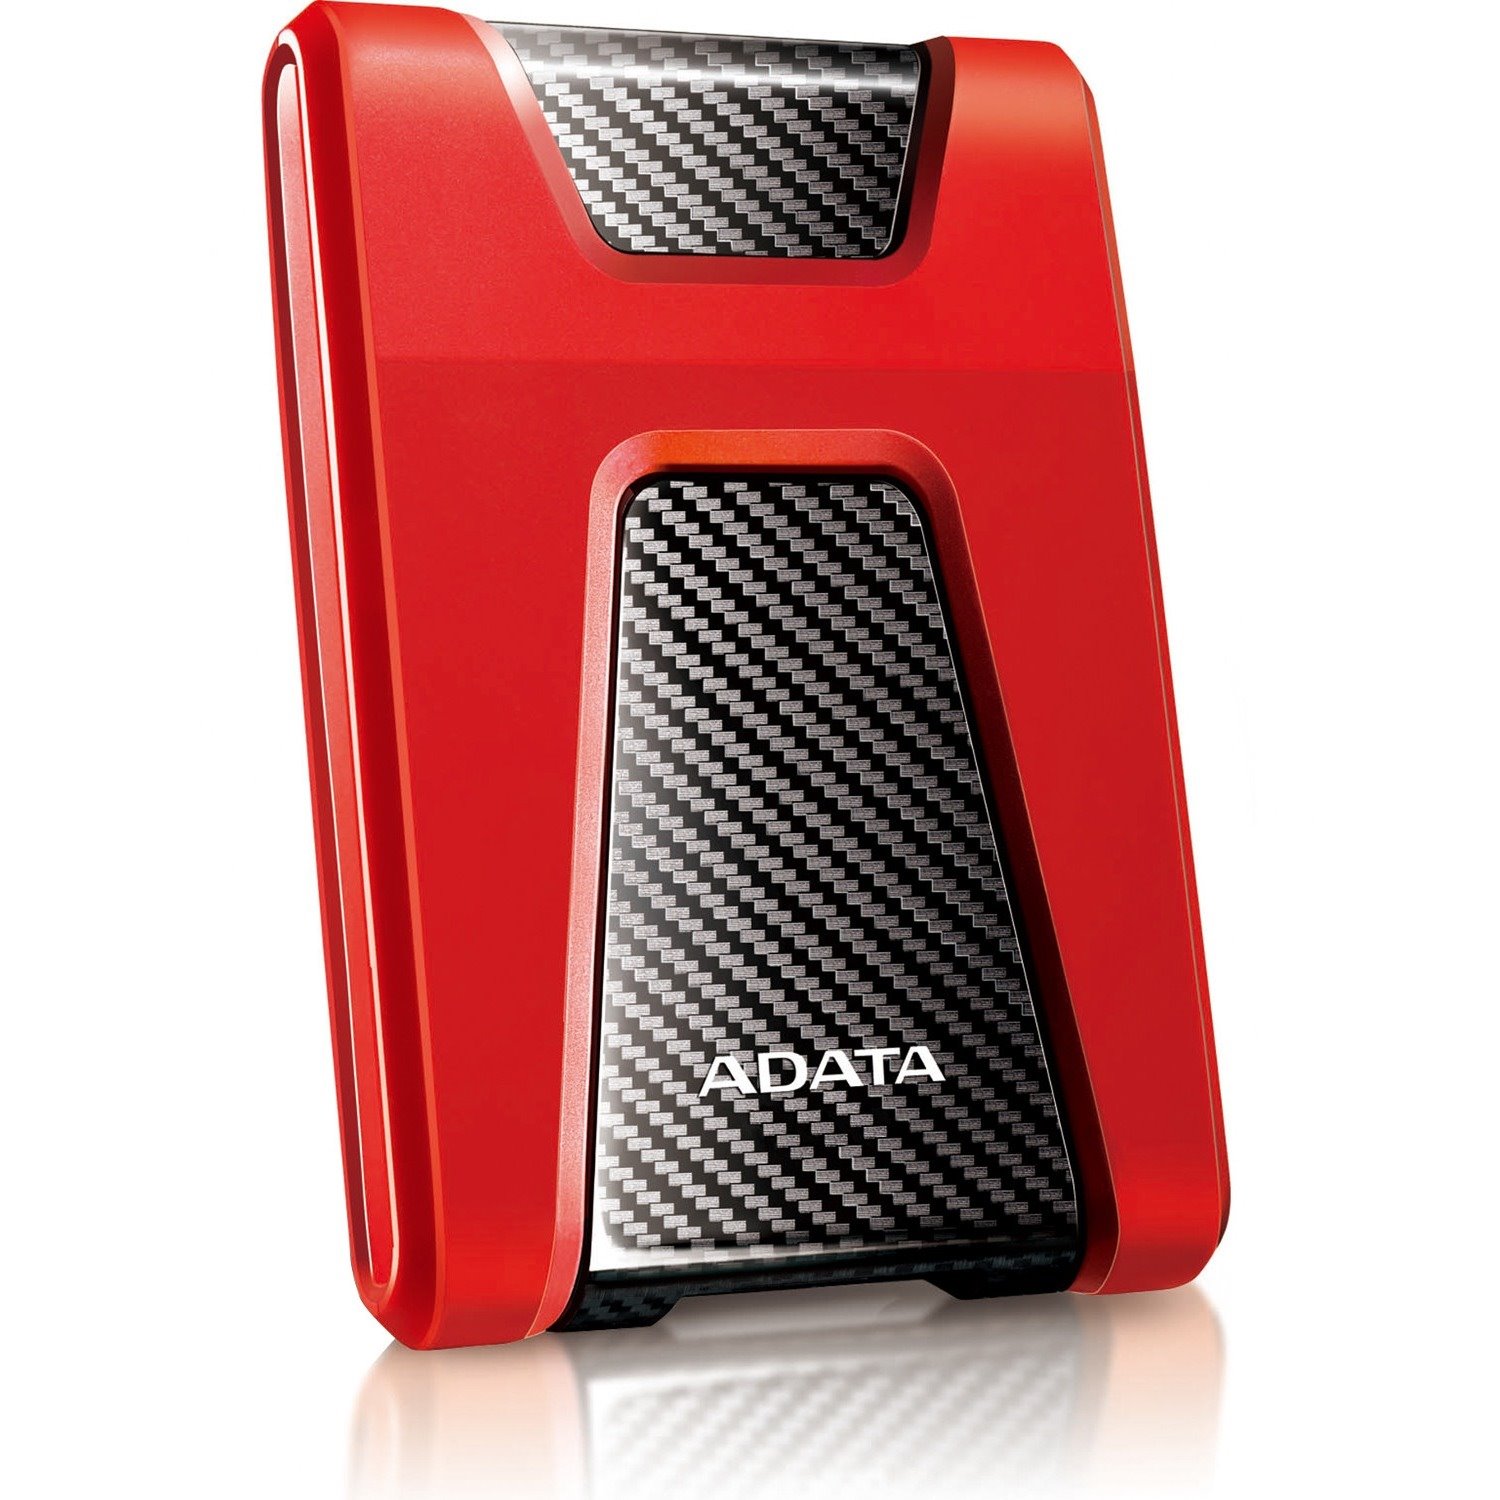 Adata DashDrive Durable HD650 AHD650-1TU31-CRD 1 TB Portable Hard Drive - 2.5" External - Red